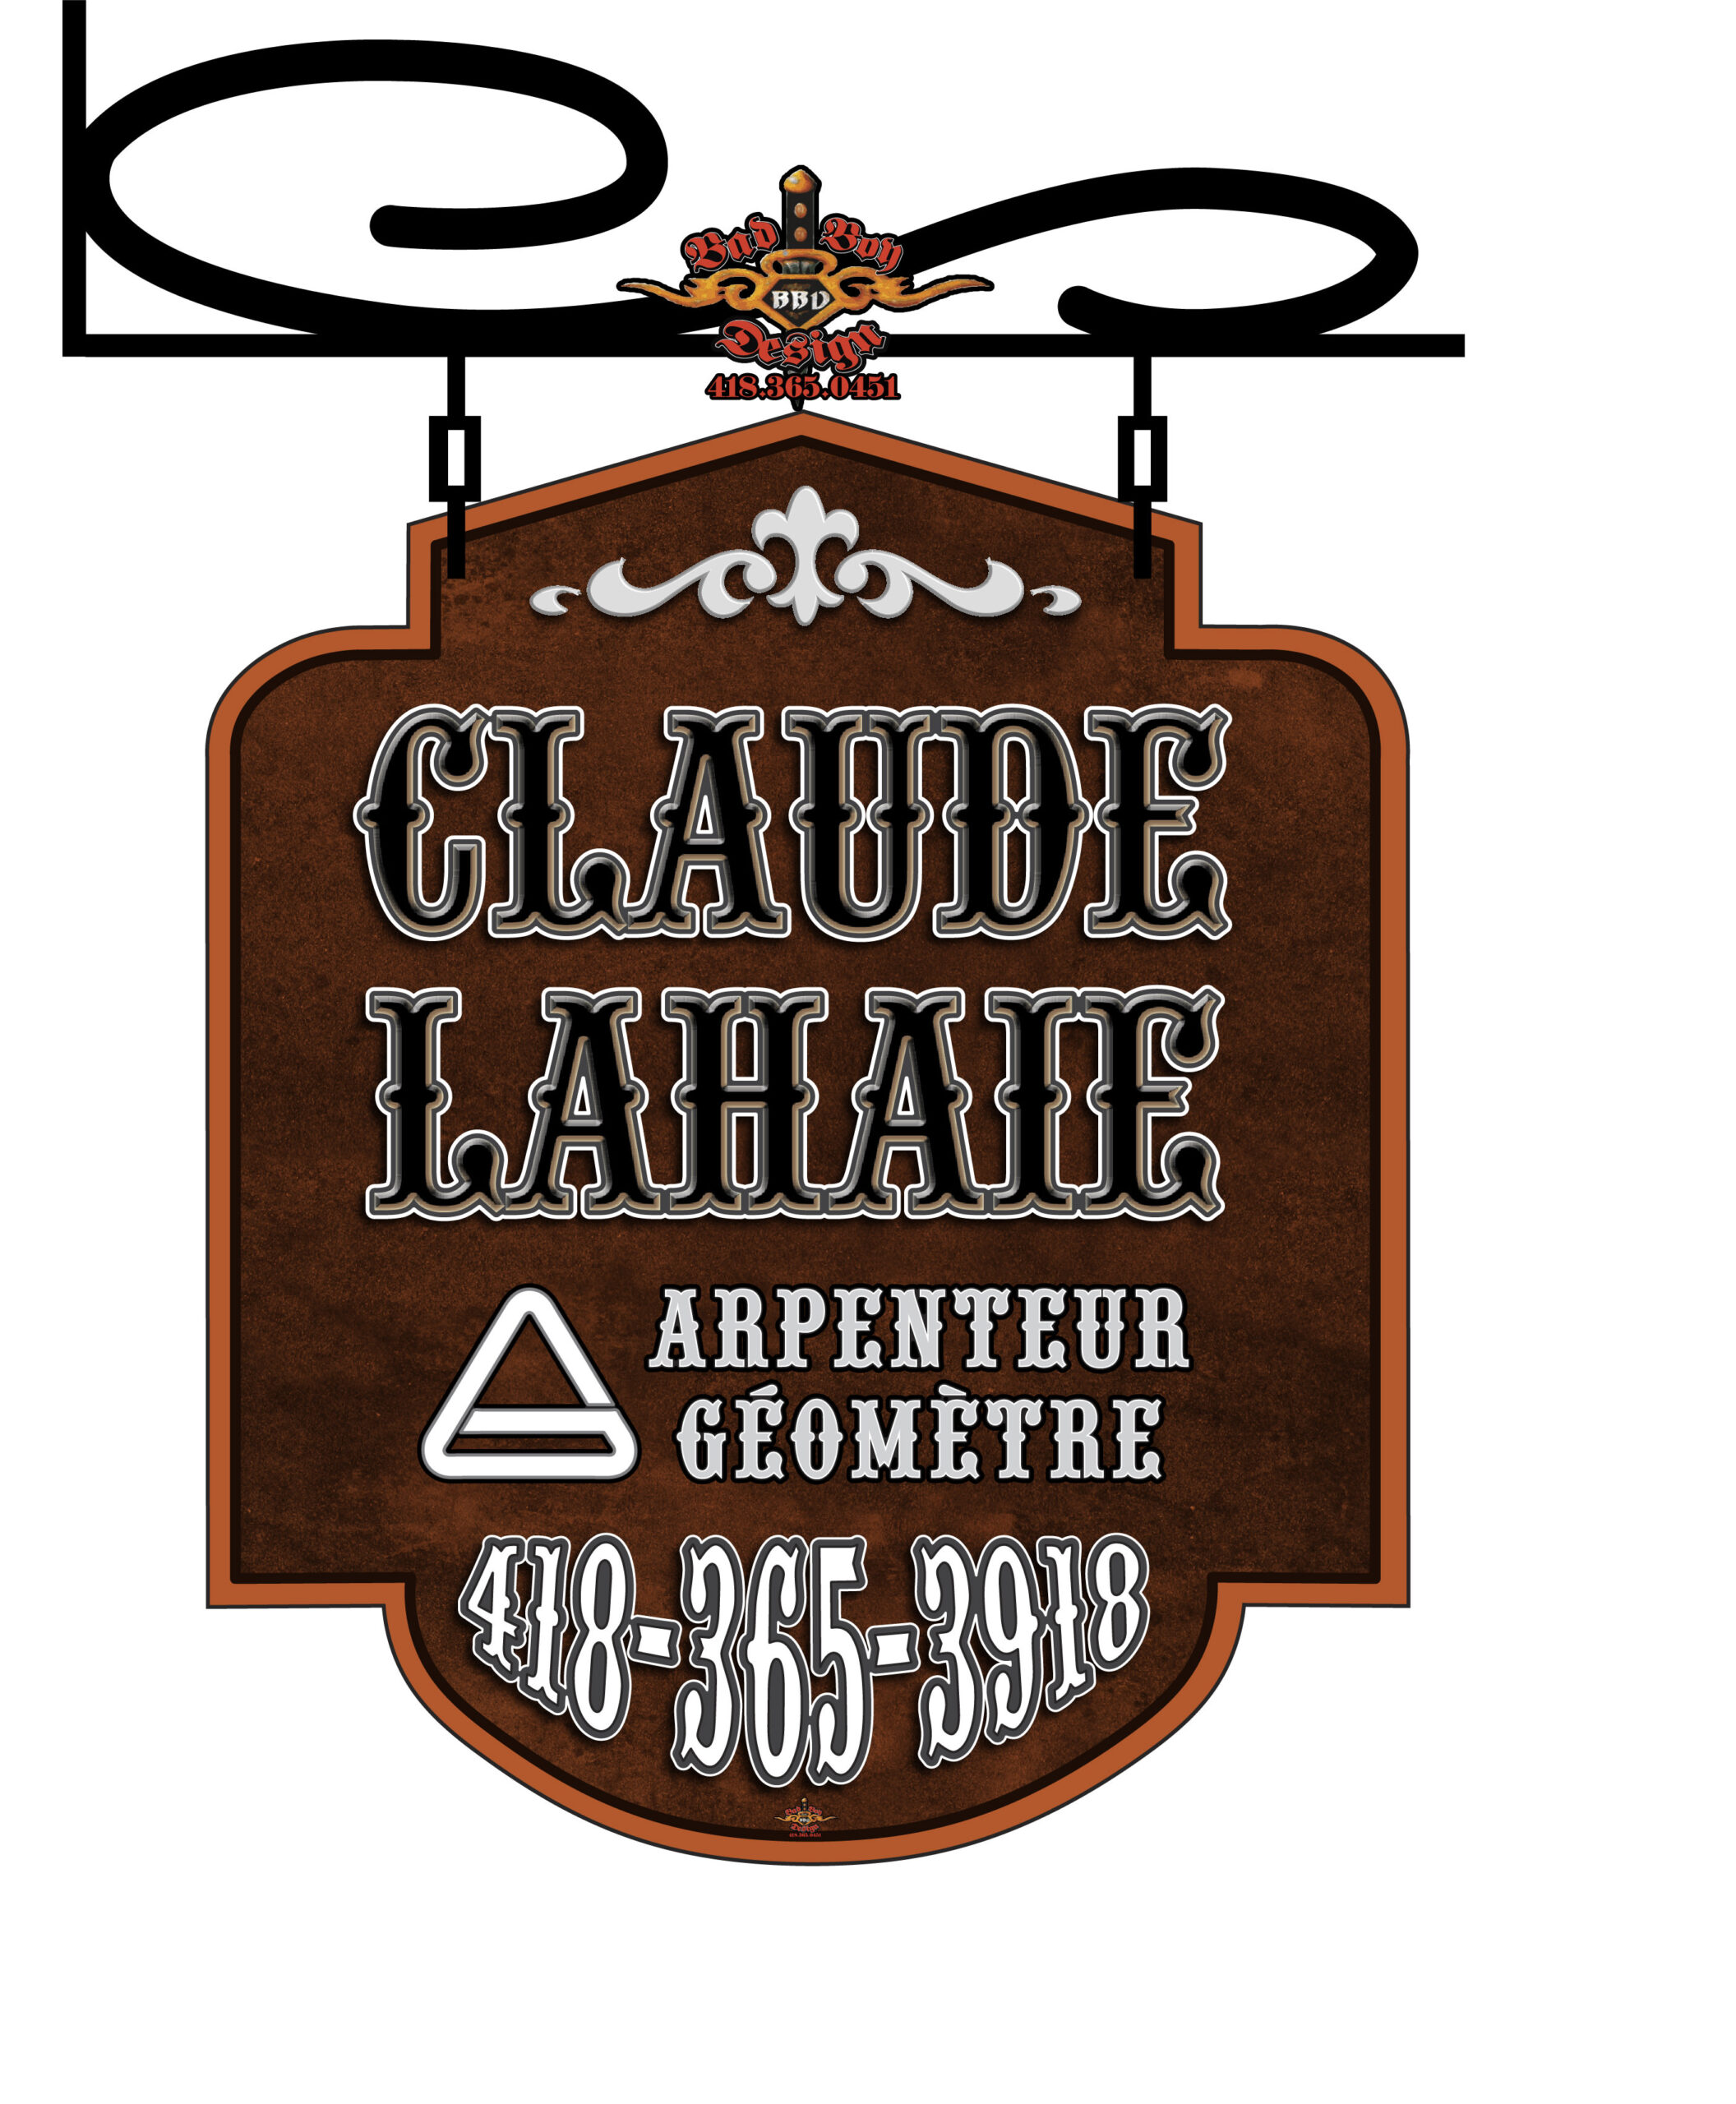 Claude Lahaie - Arpenteur géomètre